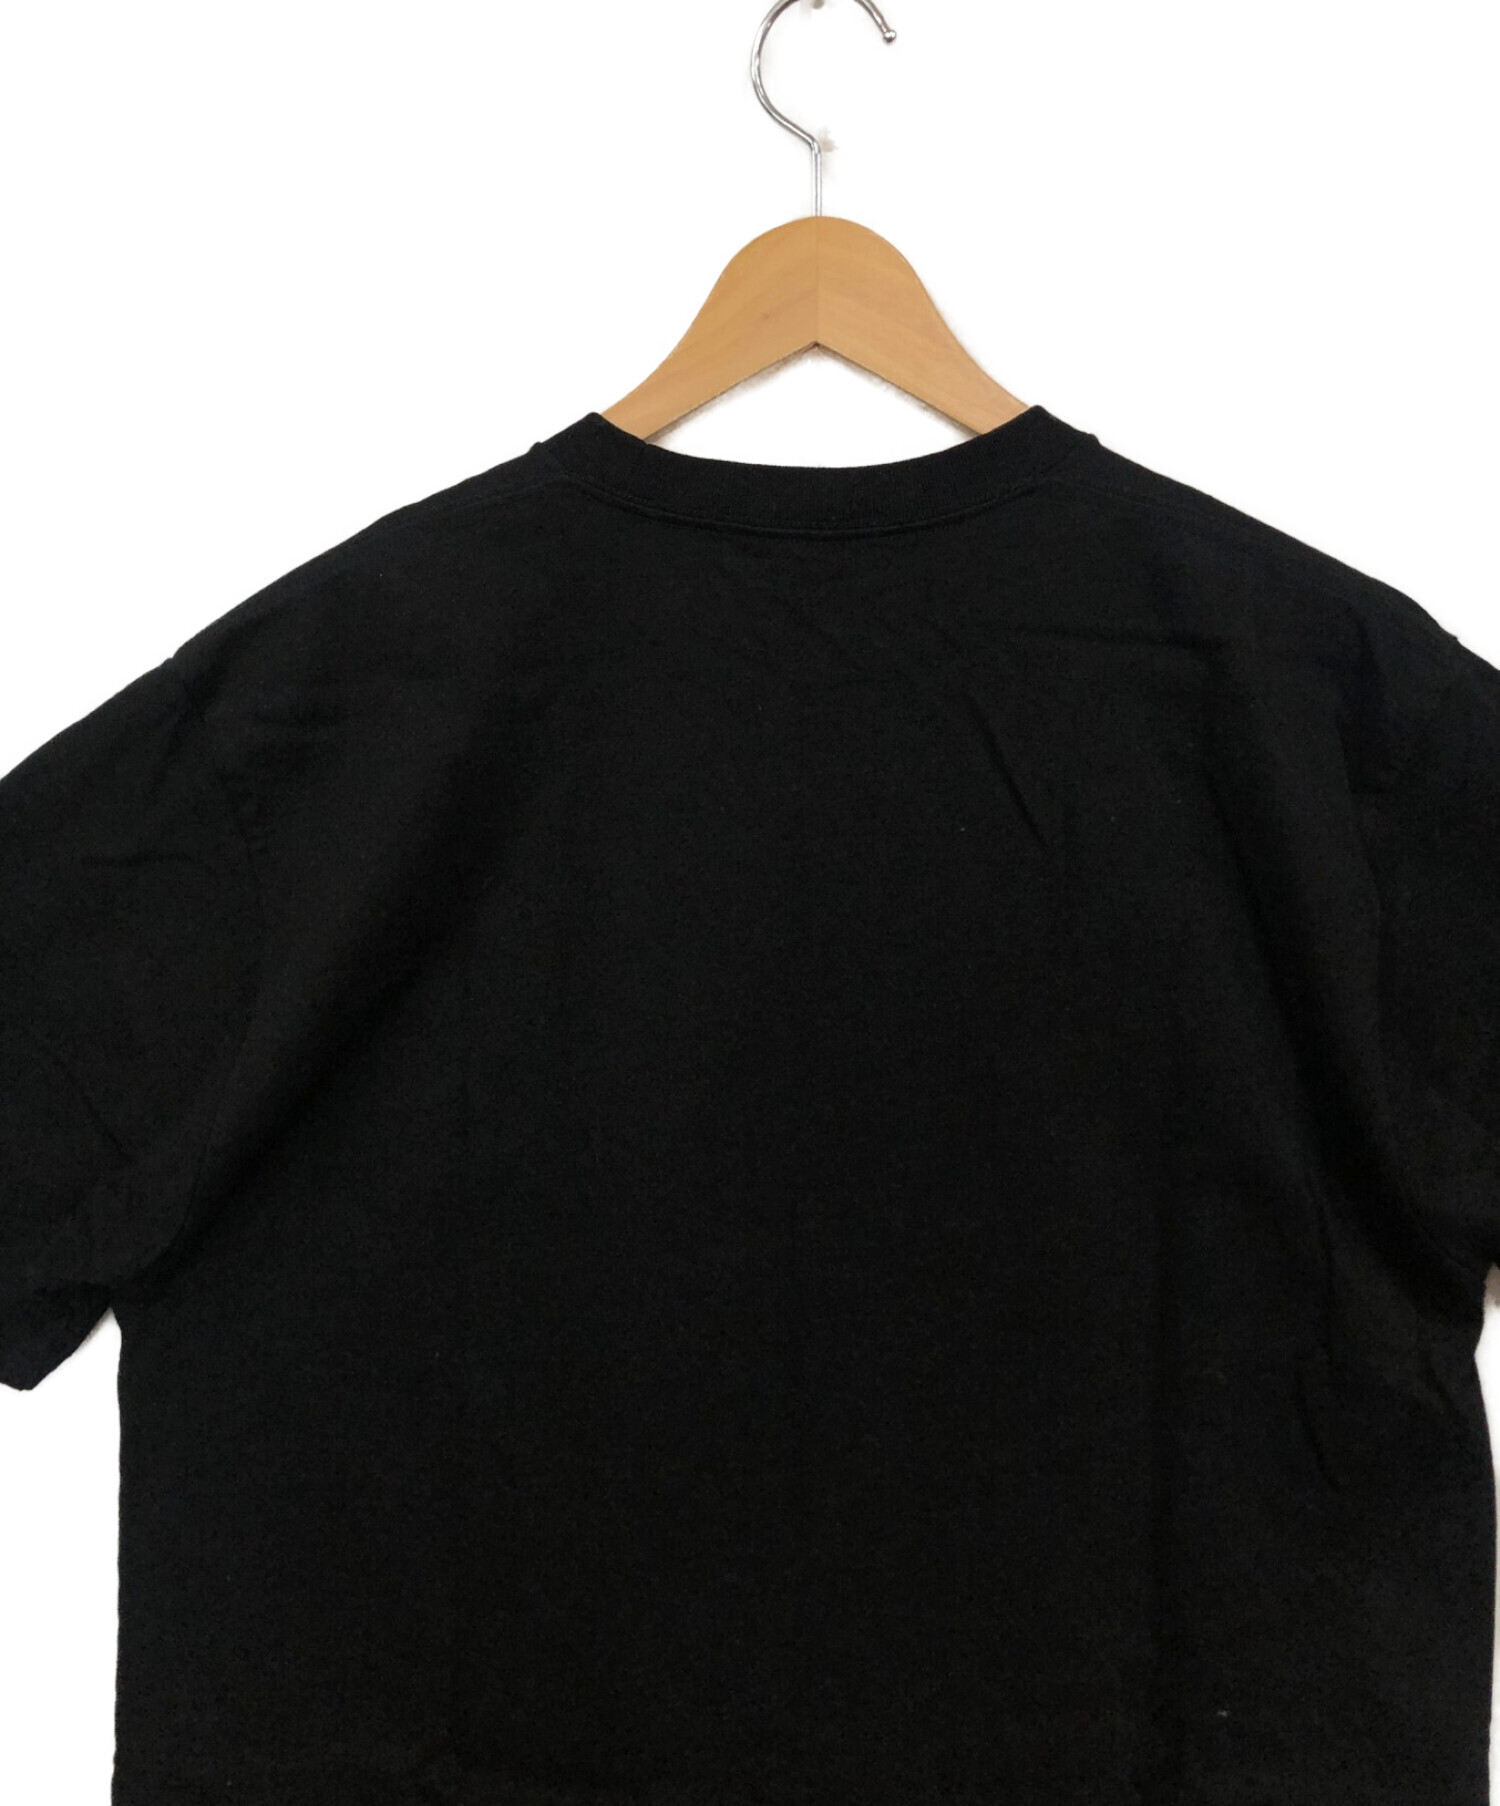 GOD SELECTION XXX (ゴッドセレクショントリプルエックス) Tシャツ ブラック サイズ:M